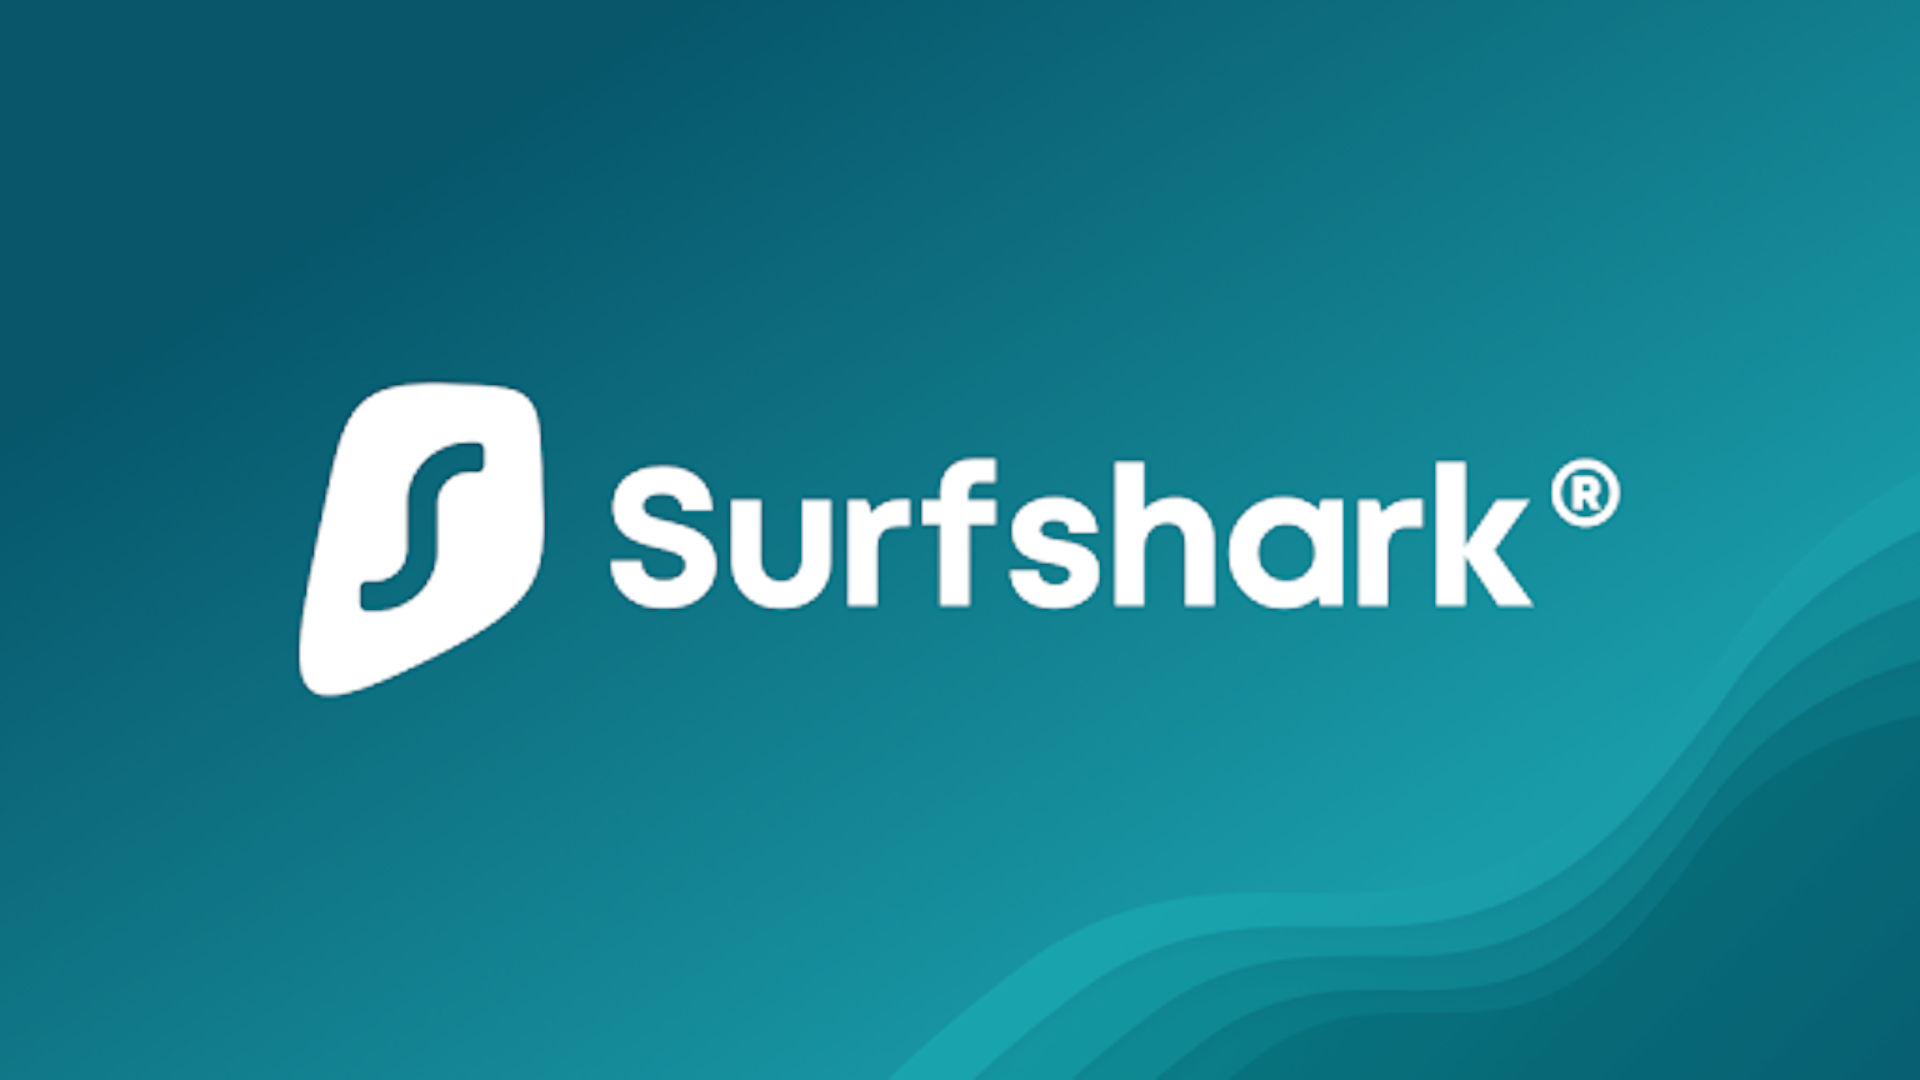 Best VPNs for mobiles, number 4: Surfshark. Image shows its logo.